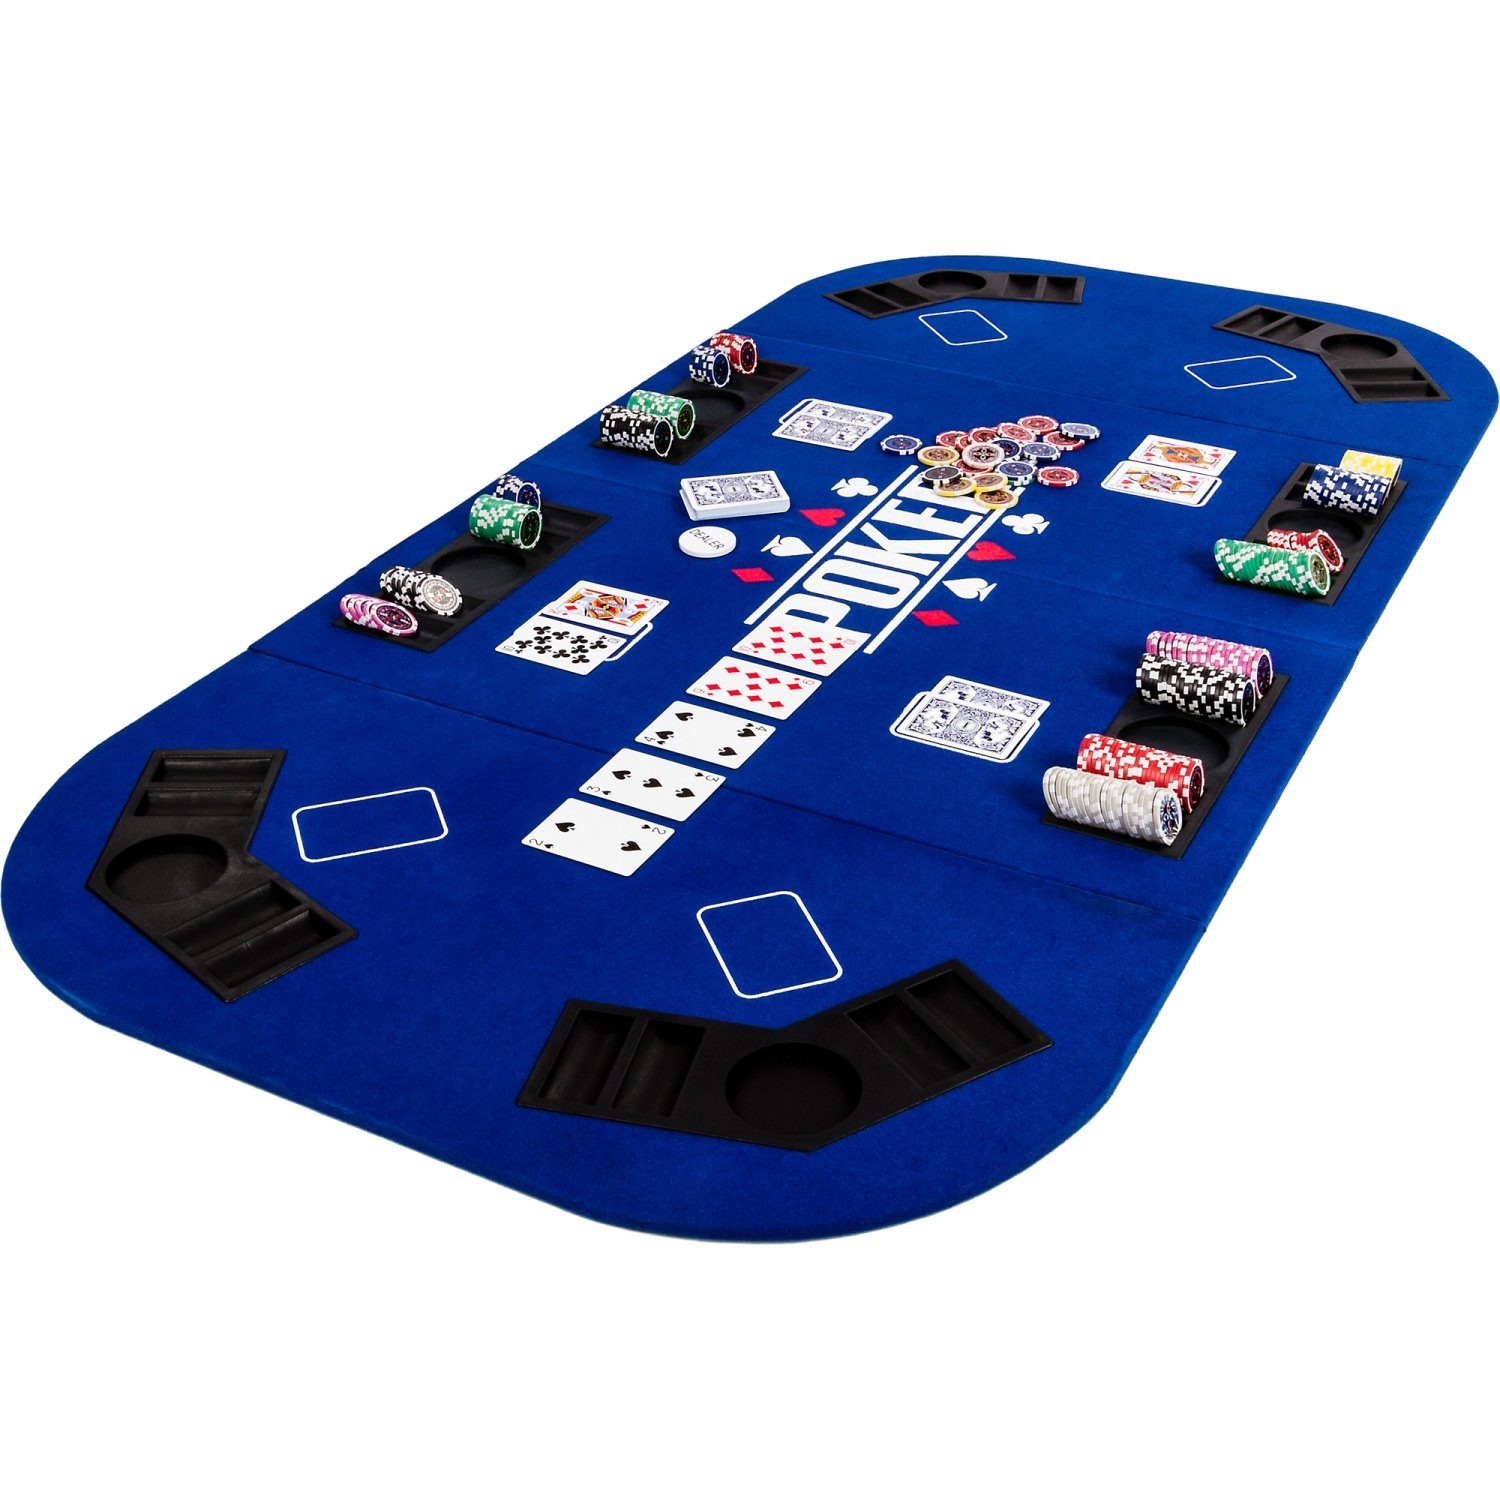 GAMES PLANET Spiel, Games Planet Faltbare Pokerauflage „Straight“, 2-8 Spieler, Maße 160x80 cm, MDF Platte, 8 Getränkehalter, 8 Chiptrays Blau